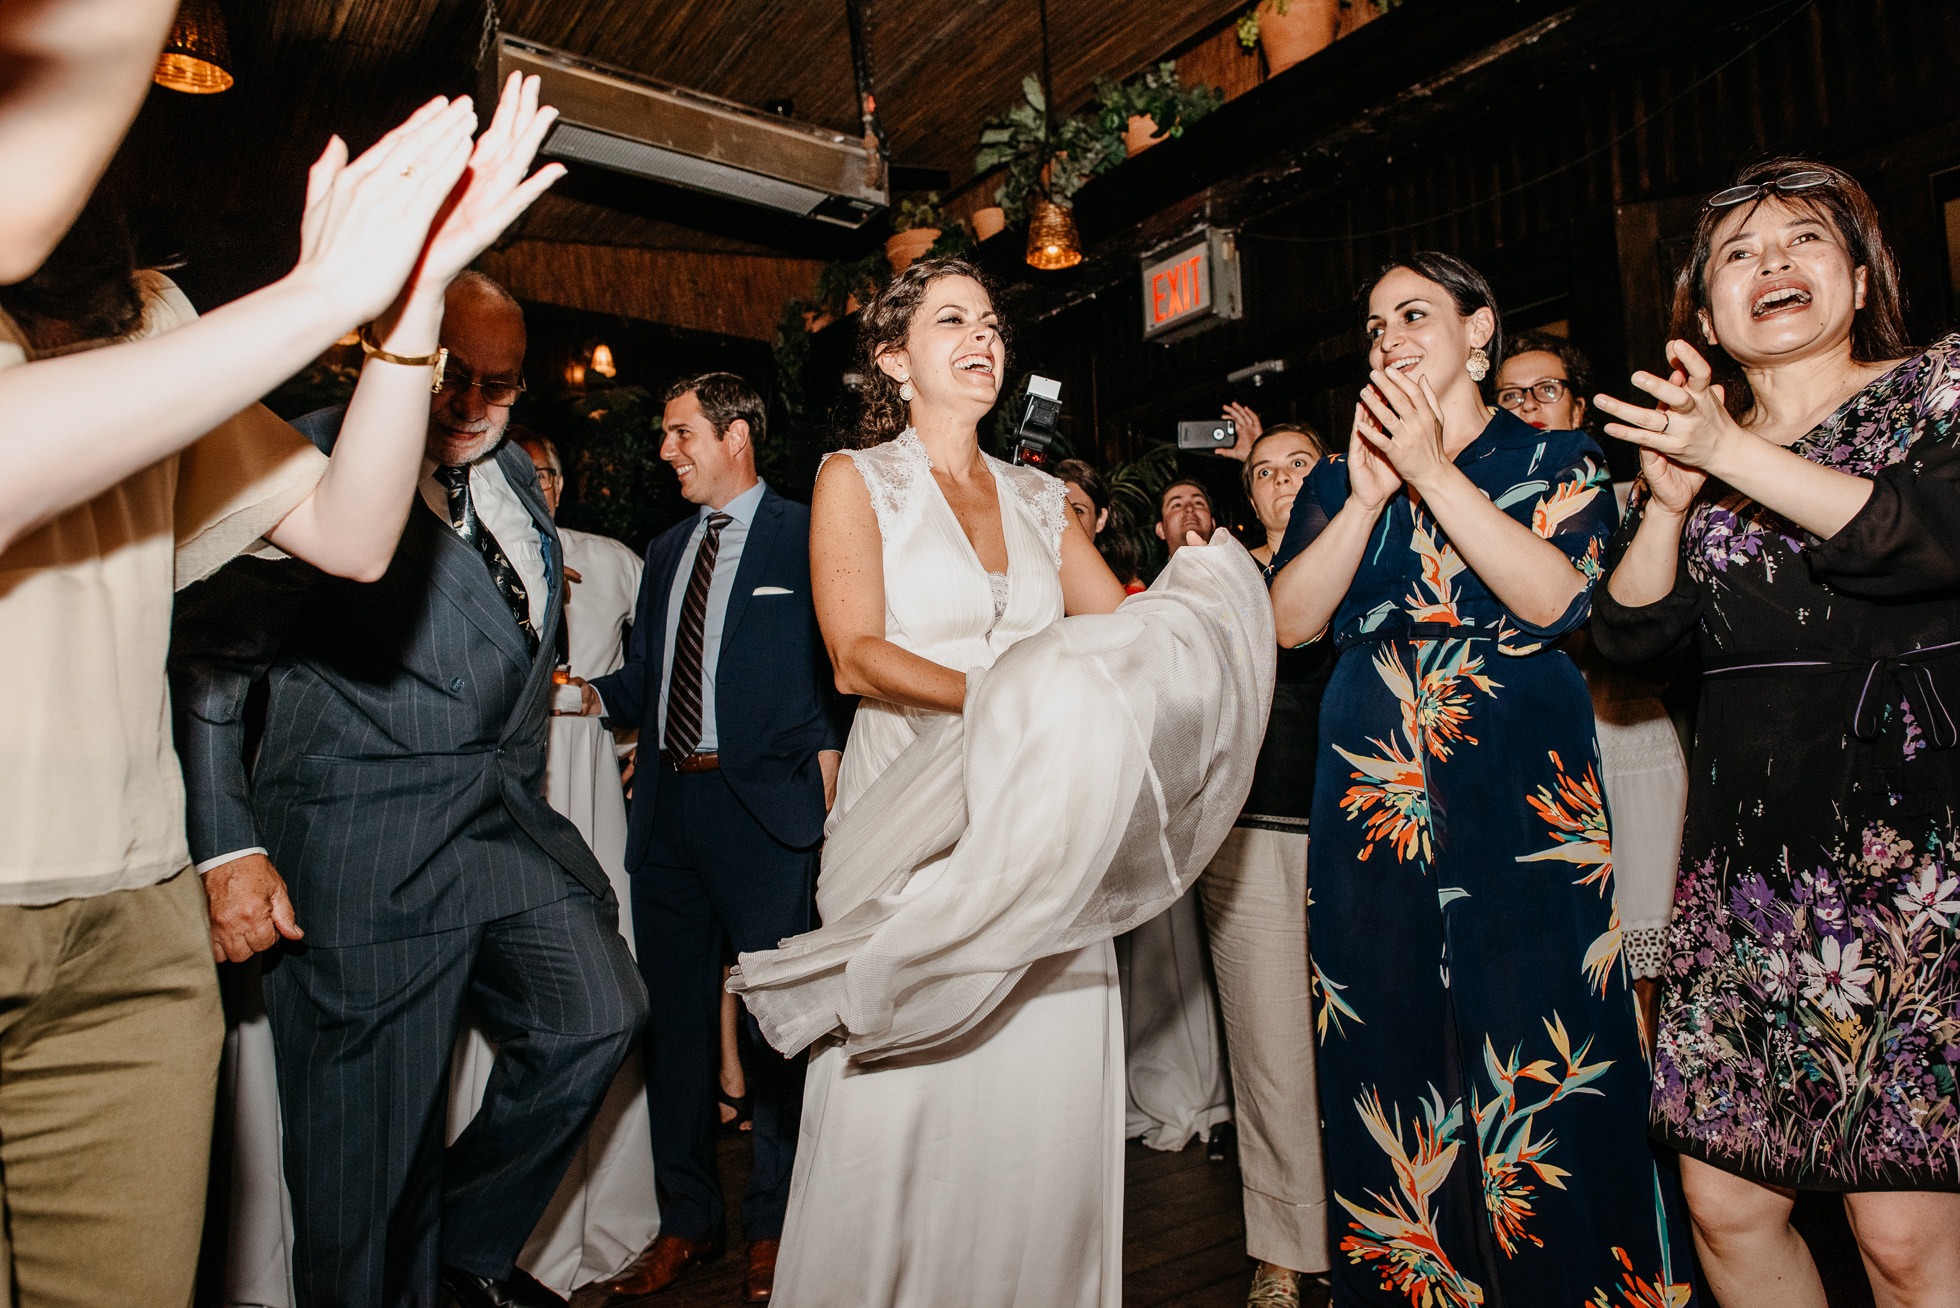 bride dancing at wedding